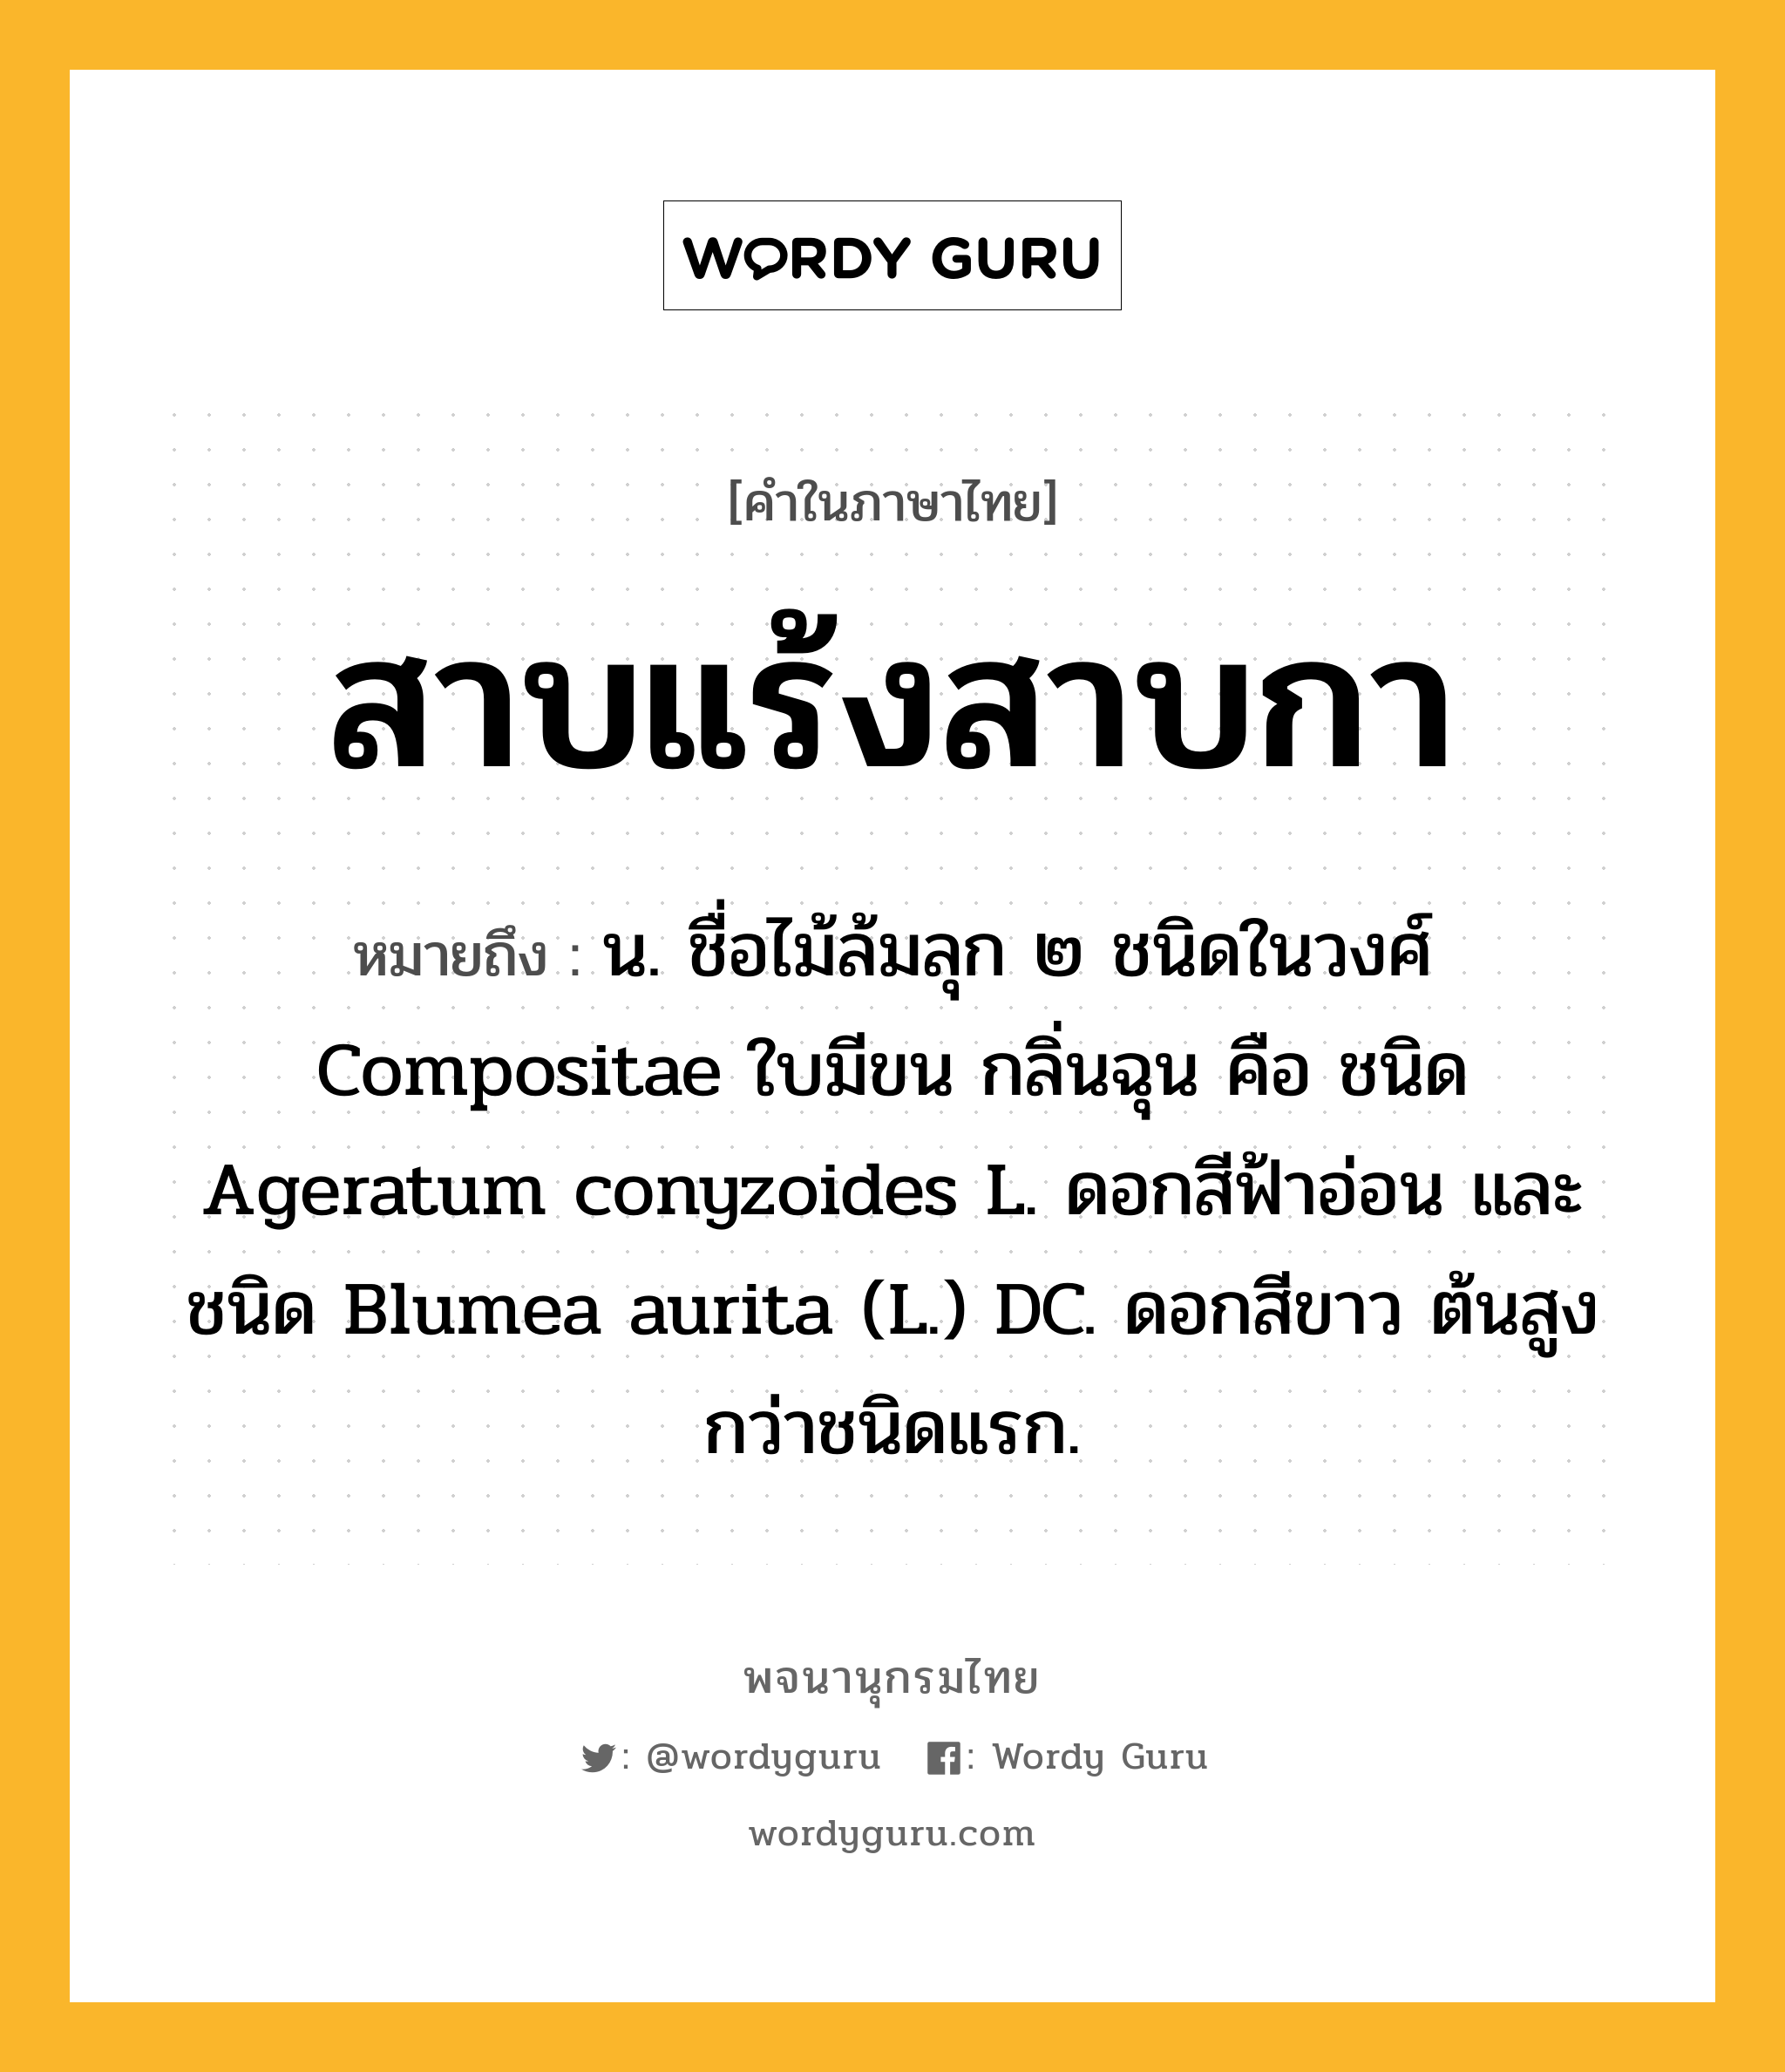 สาบแร้งสาบกา ความหมาย หมายถึงอะไร?, คำในภาษาไทย สาบแร้งสาบกา หมายถึง น. ชื่อไม้ล้มลุก ๒ ชนิดในวงศ์ Compositae ใบมีขน กลิ่นฉุน คือ ชนิด Ageratum conyzoides L. ดอกสีฟ้าอ่อน และชนิด Blumea aurita (L.) DC. ดอกสีขาว ต้นสูงกว่าชนิดแรก.